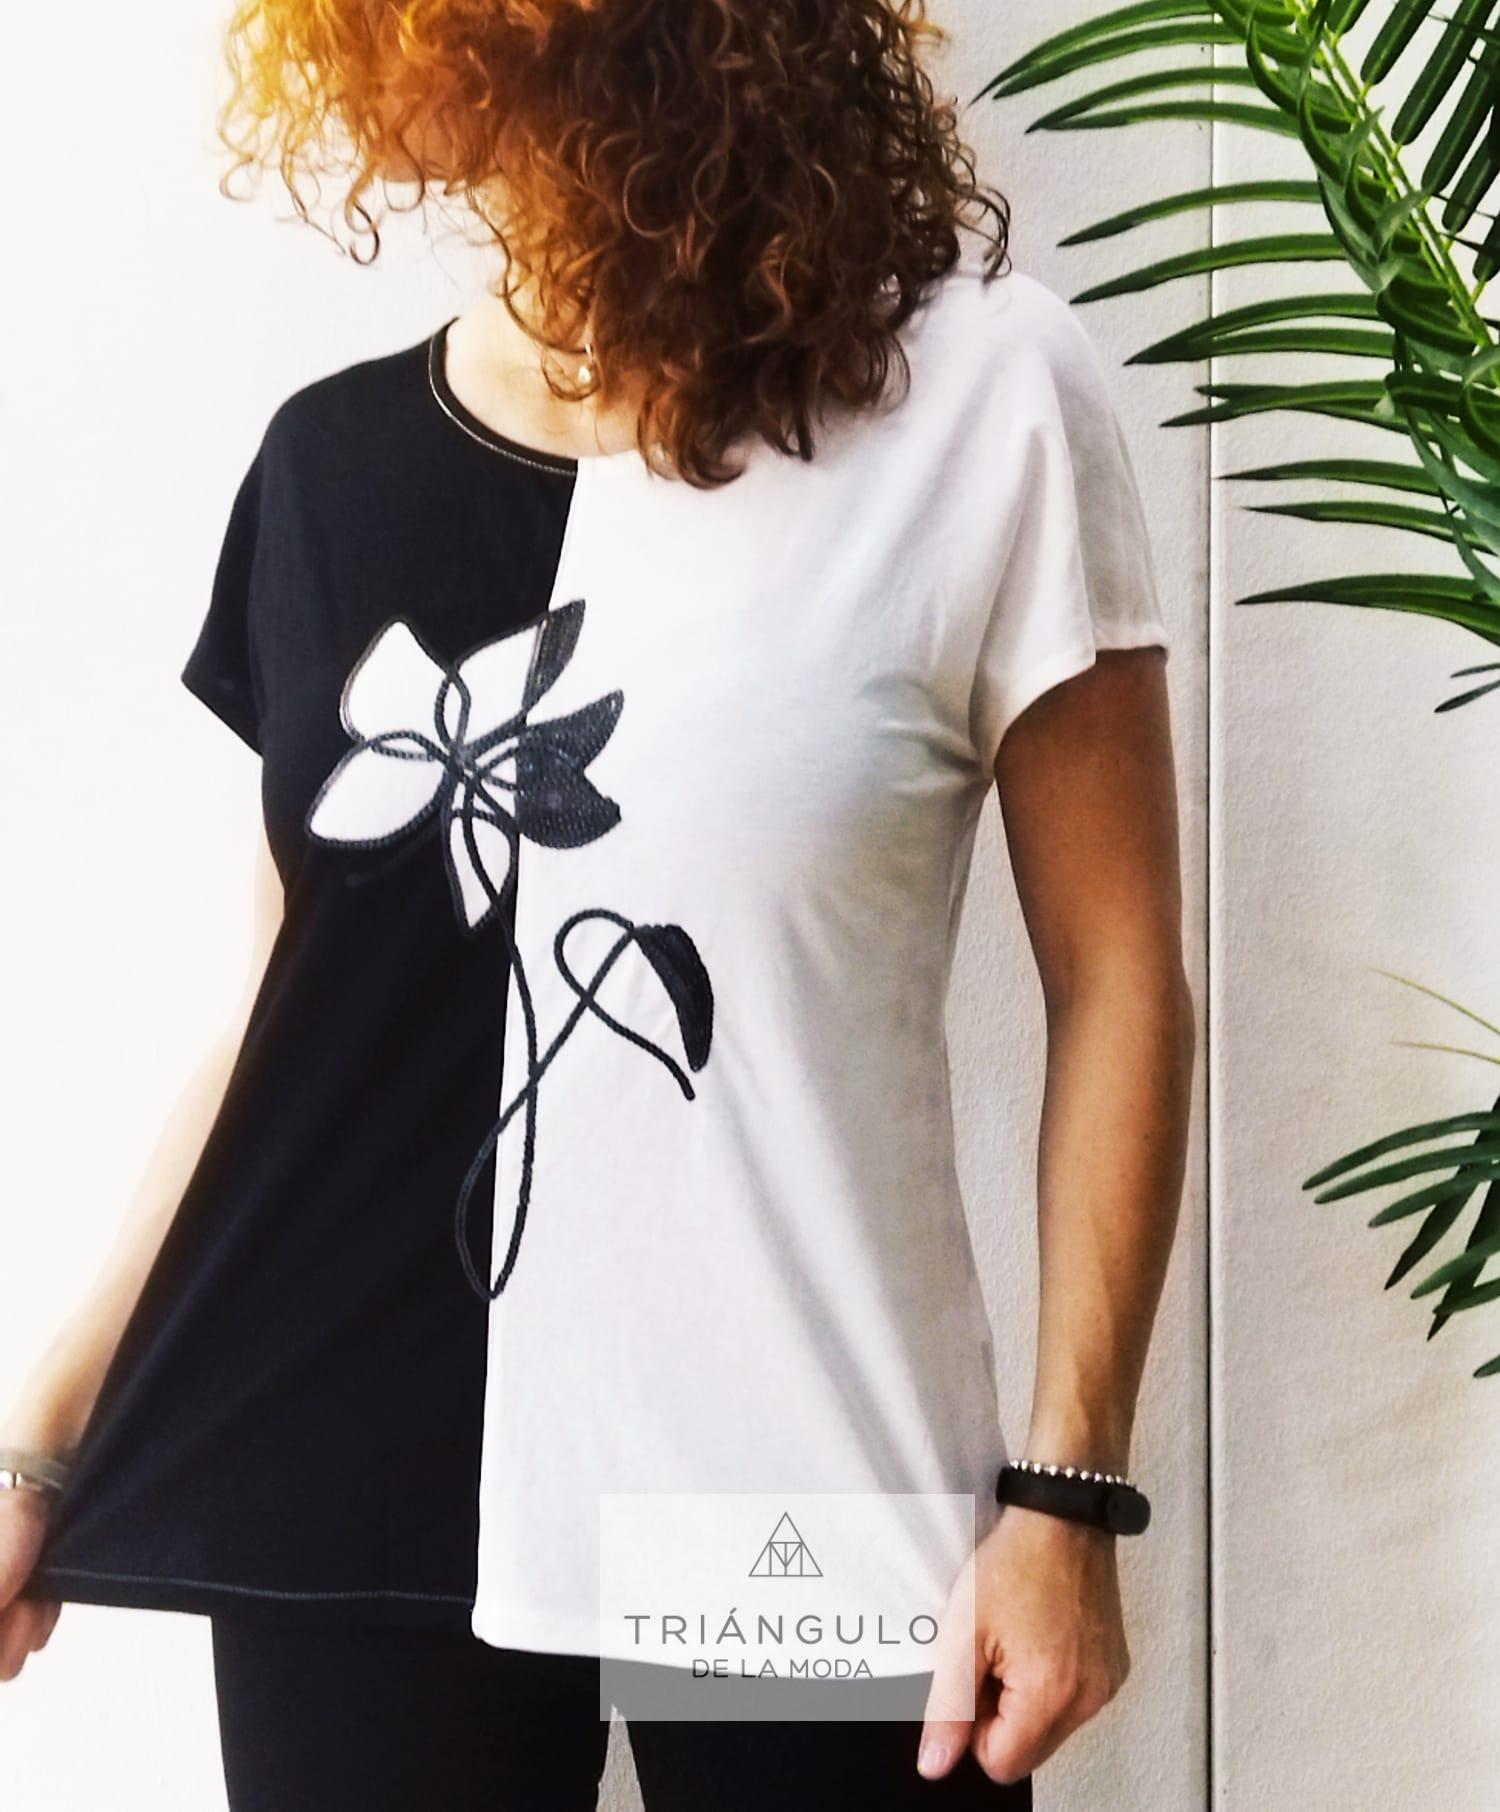 Tienda online del Triangulo de la Moda camiseta 